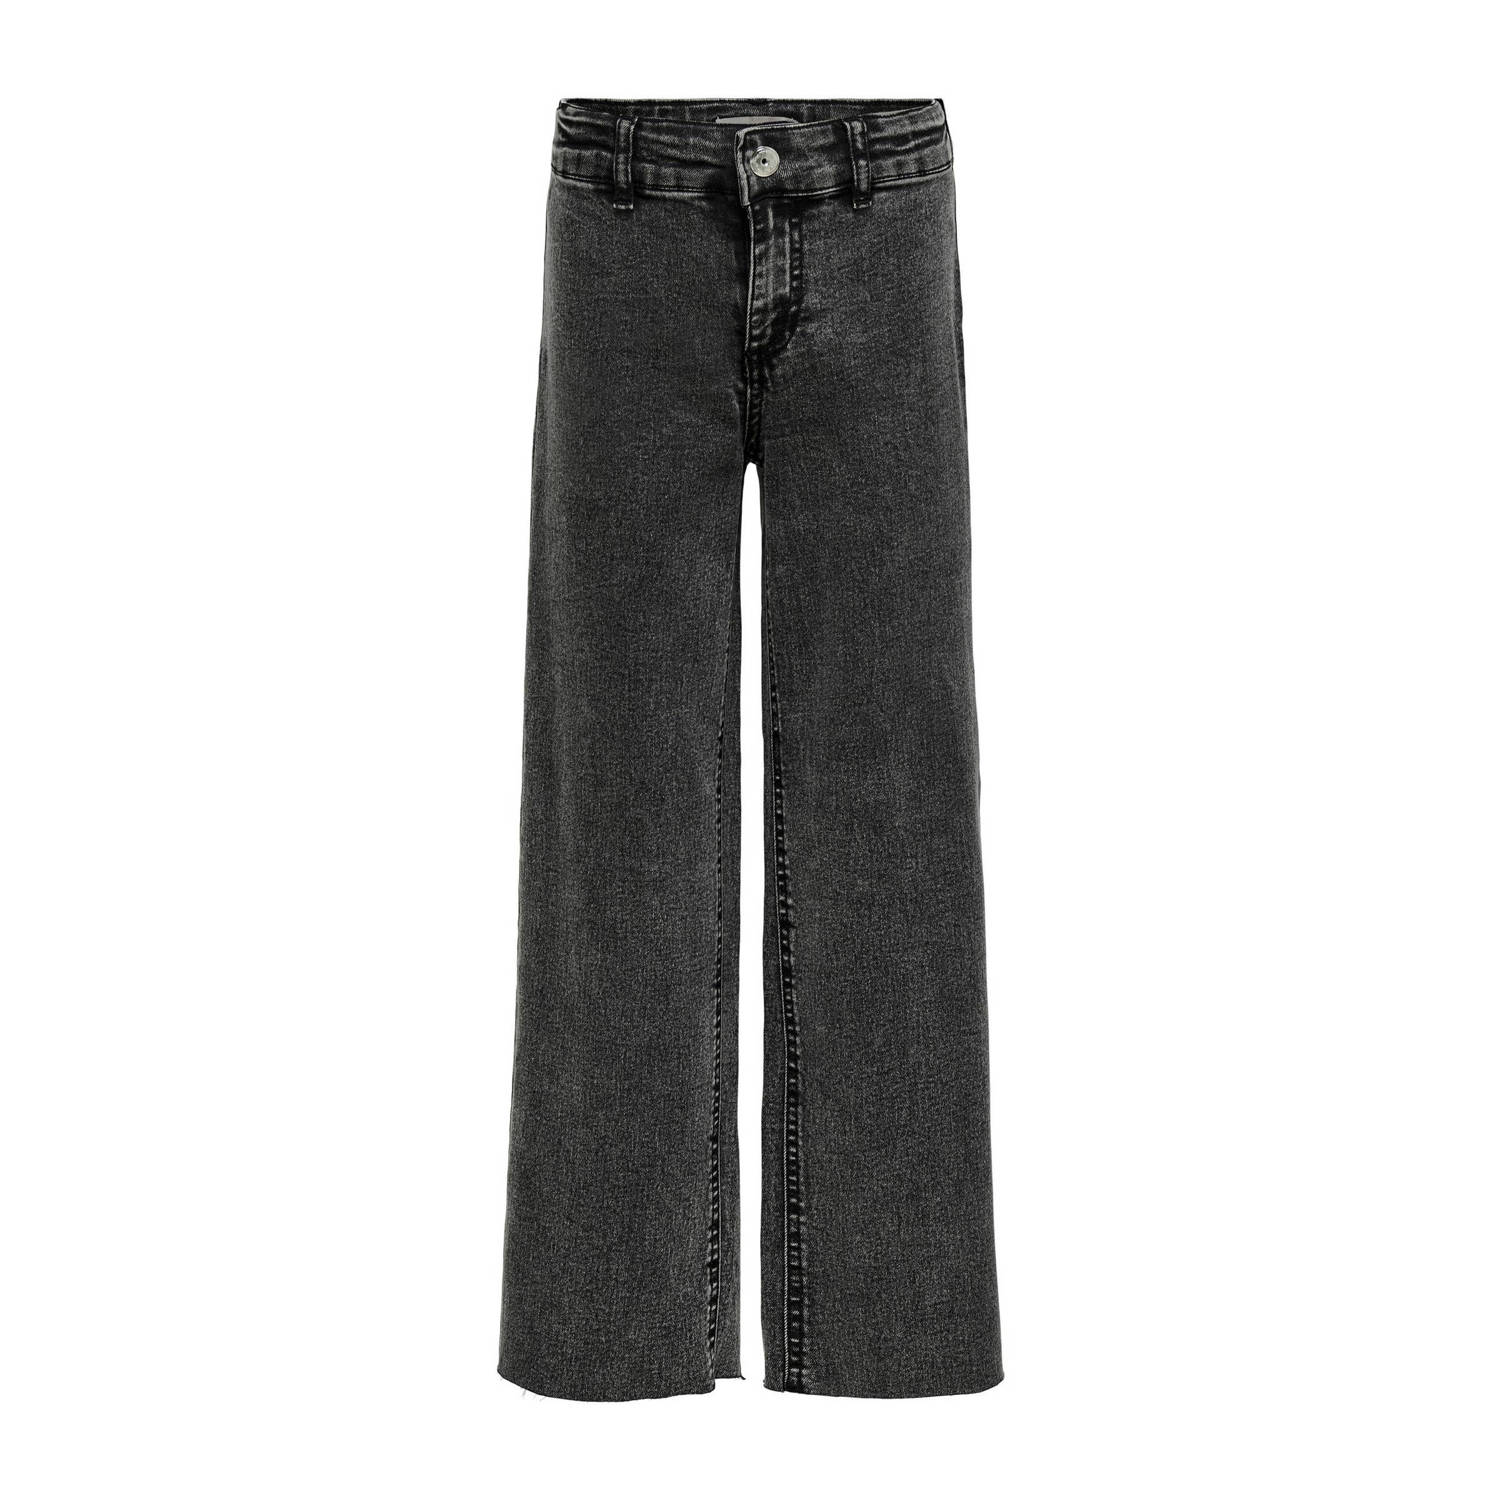 Only KIDS GIRL wide leg jeans KOGSYLVIE CLEAN washed black Zwart Meisjes Stretchdenim 116